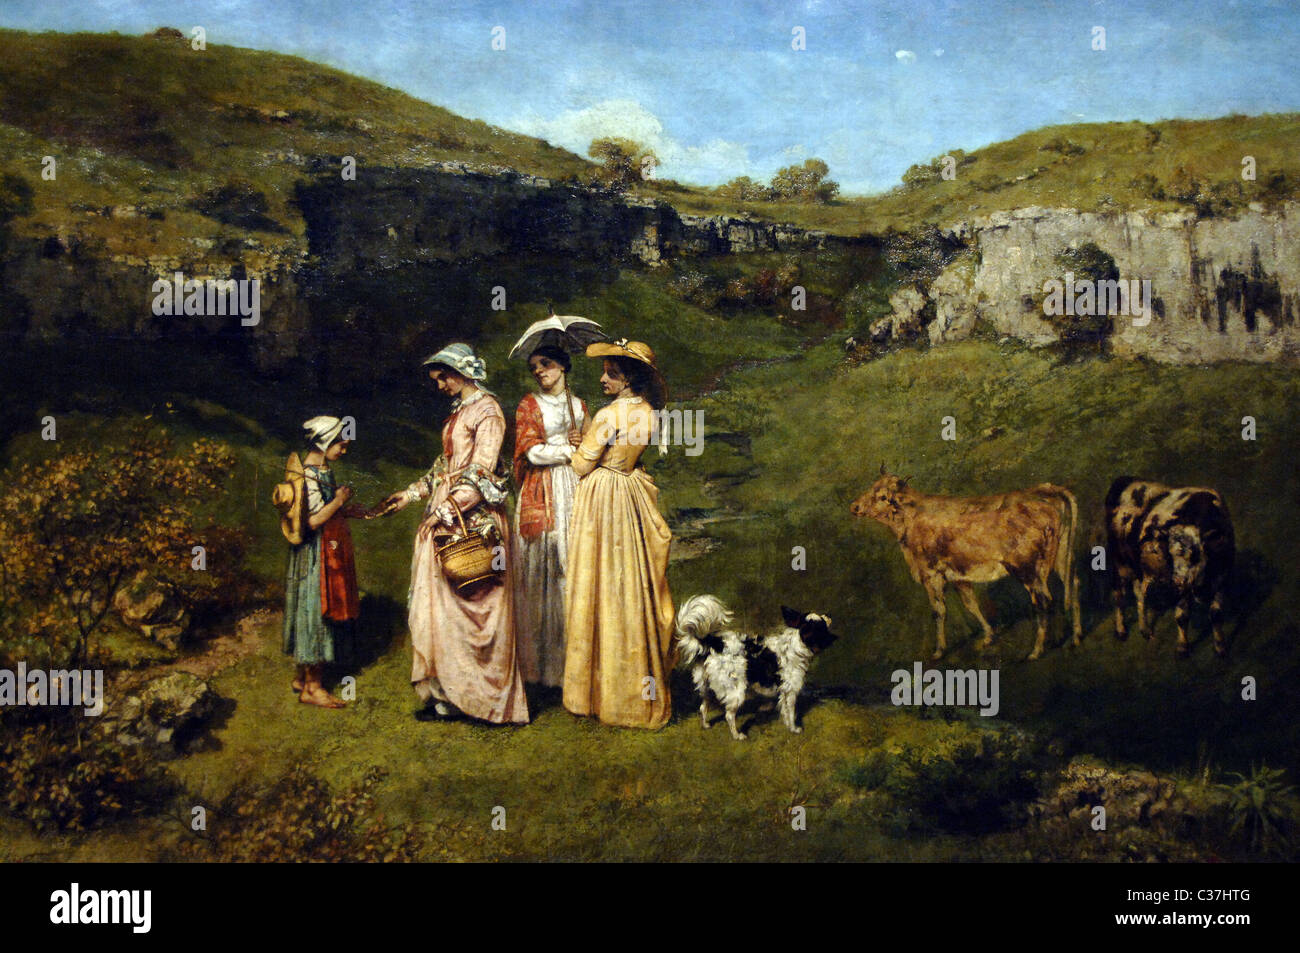 Gustave Courbet (1819-1877). El pintor francés. El movimiento realista. Las señoritas de la aldea, 1851-1852. Foto de stock